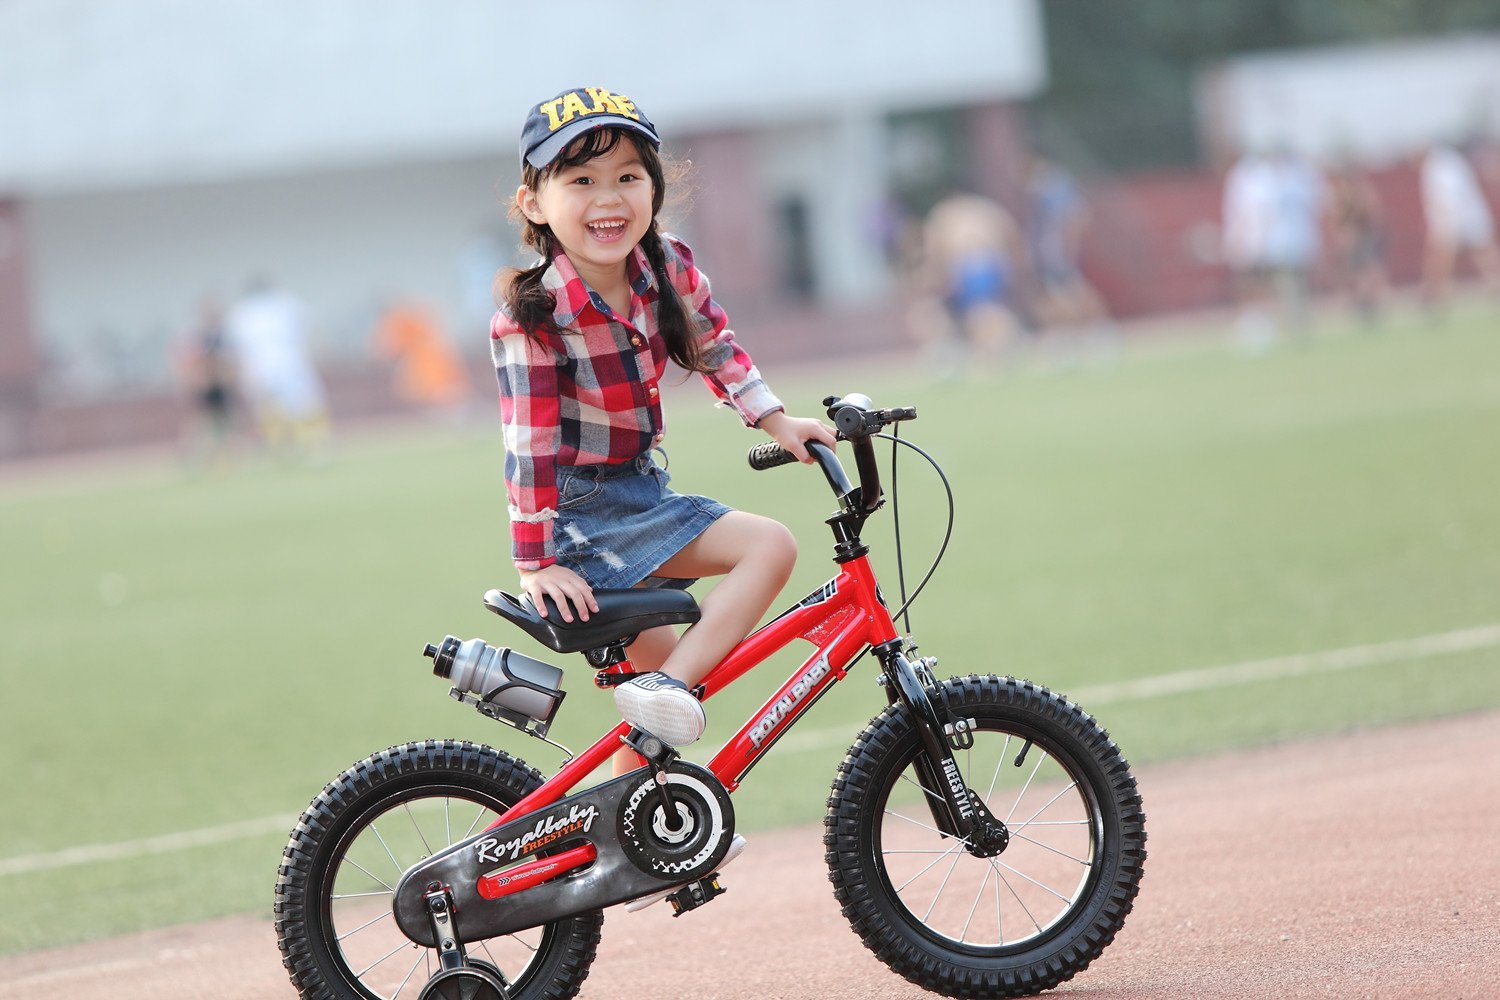 Mua xe đạp trẻ em – bài toán khó, nhiều phụ huynh gặp phải